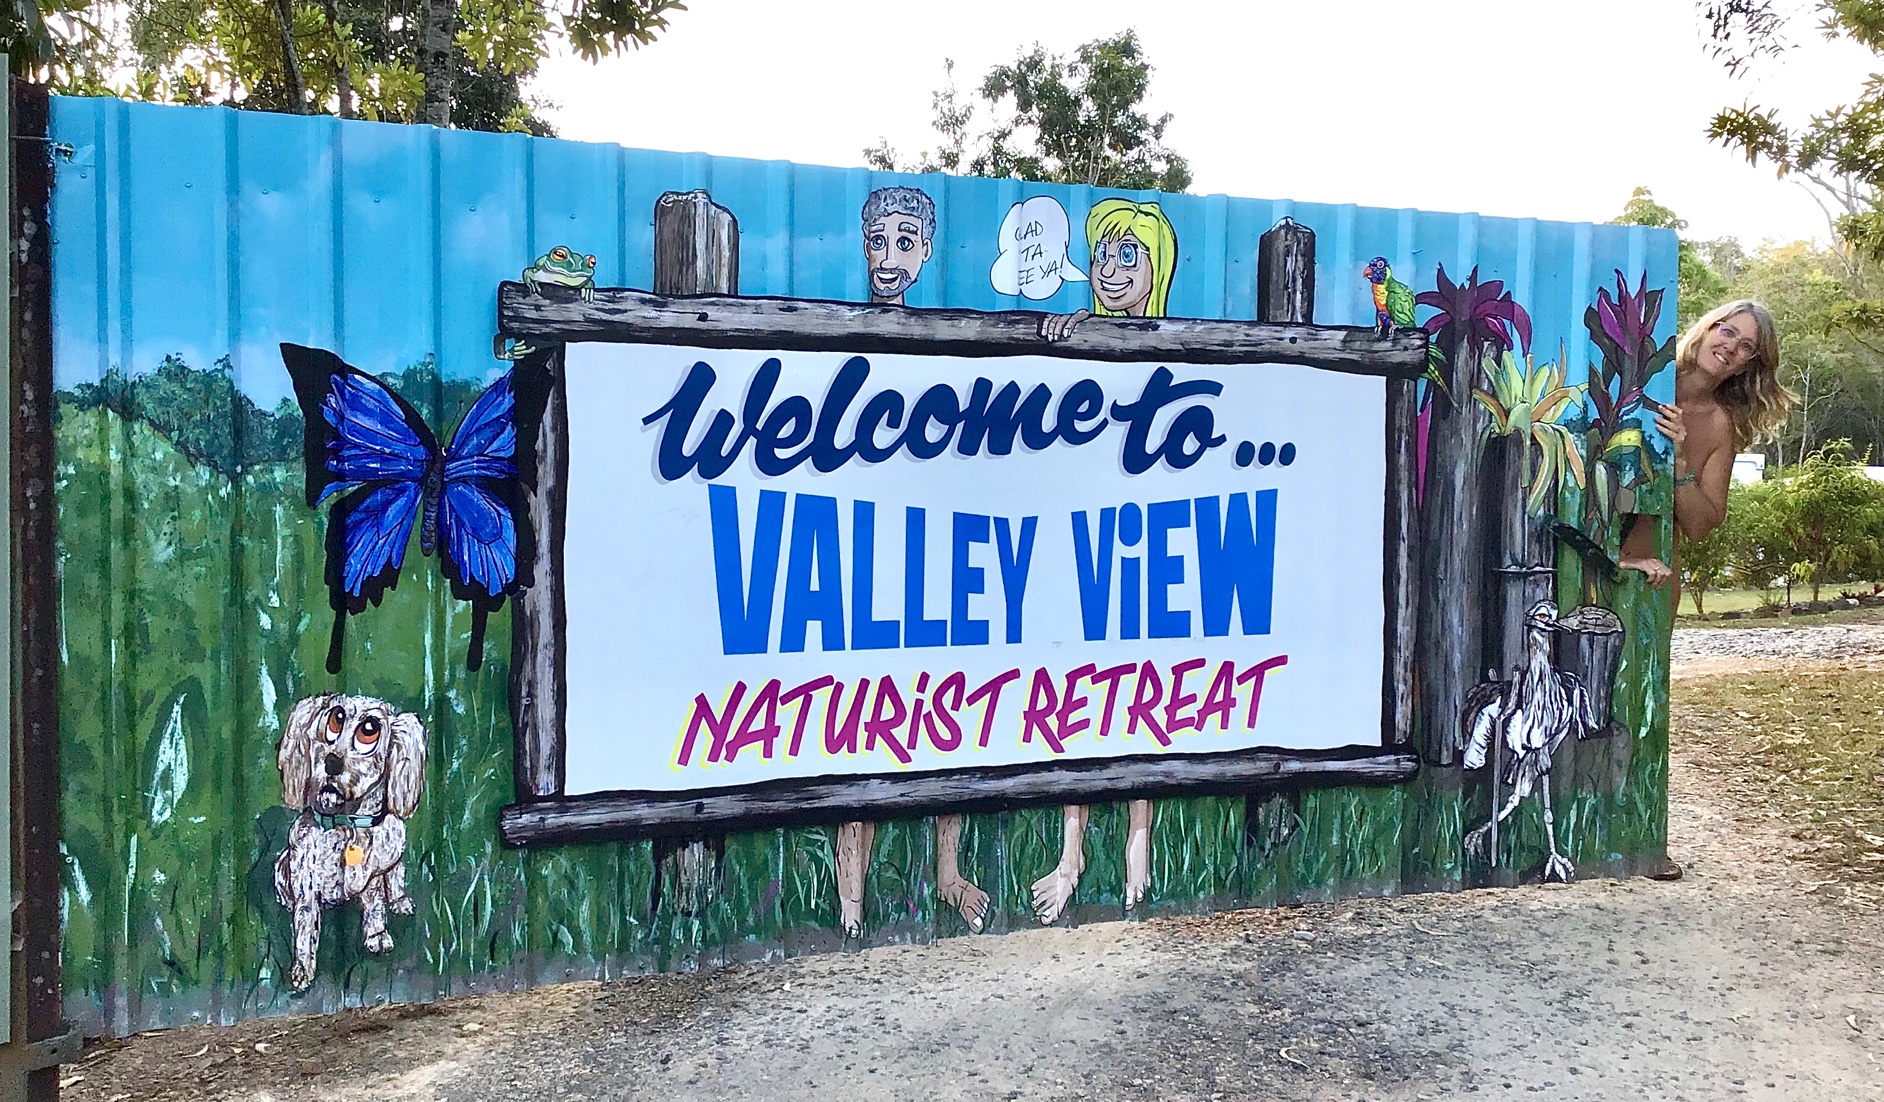 Valley View Naturist Retreat